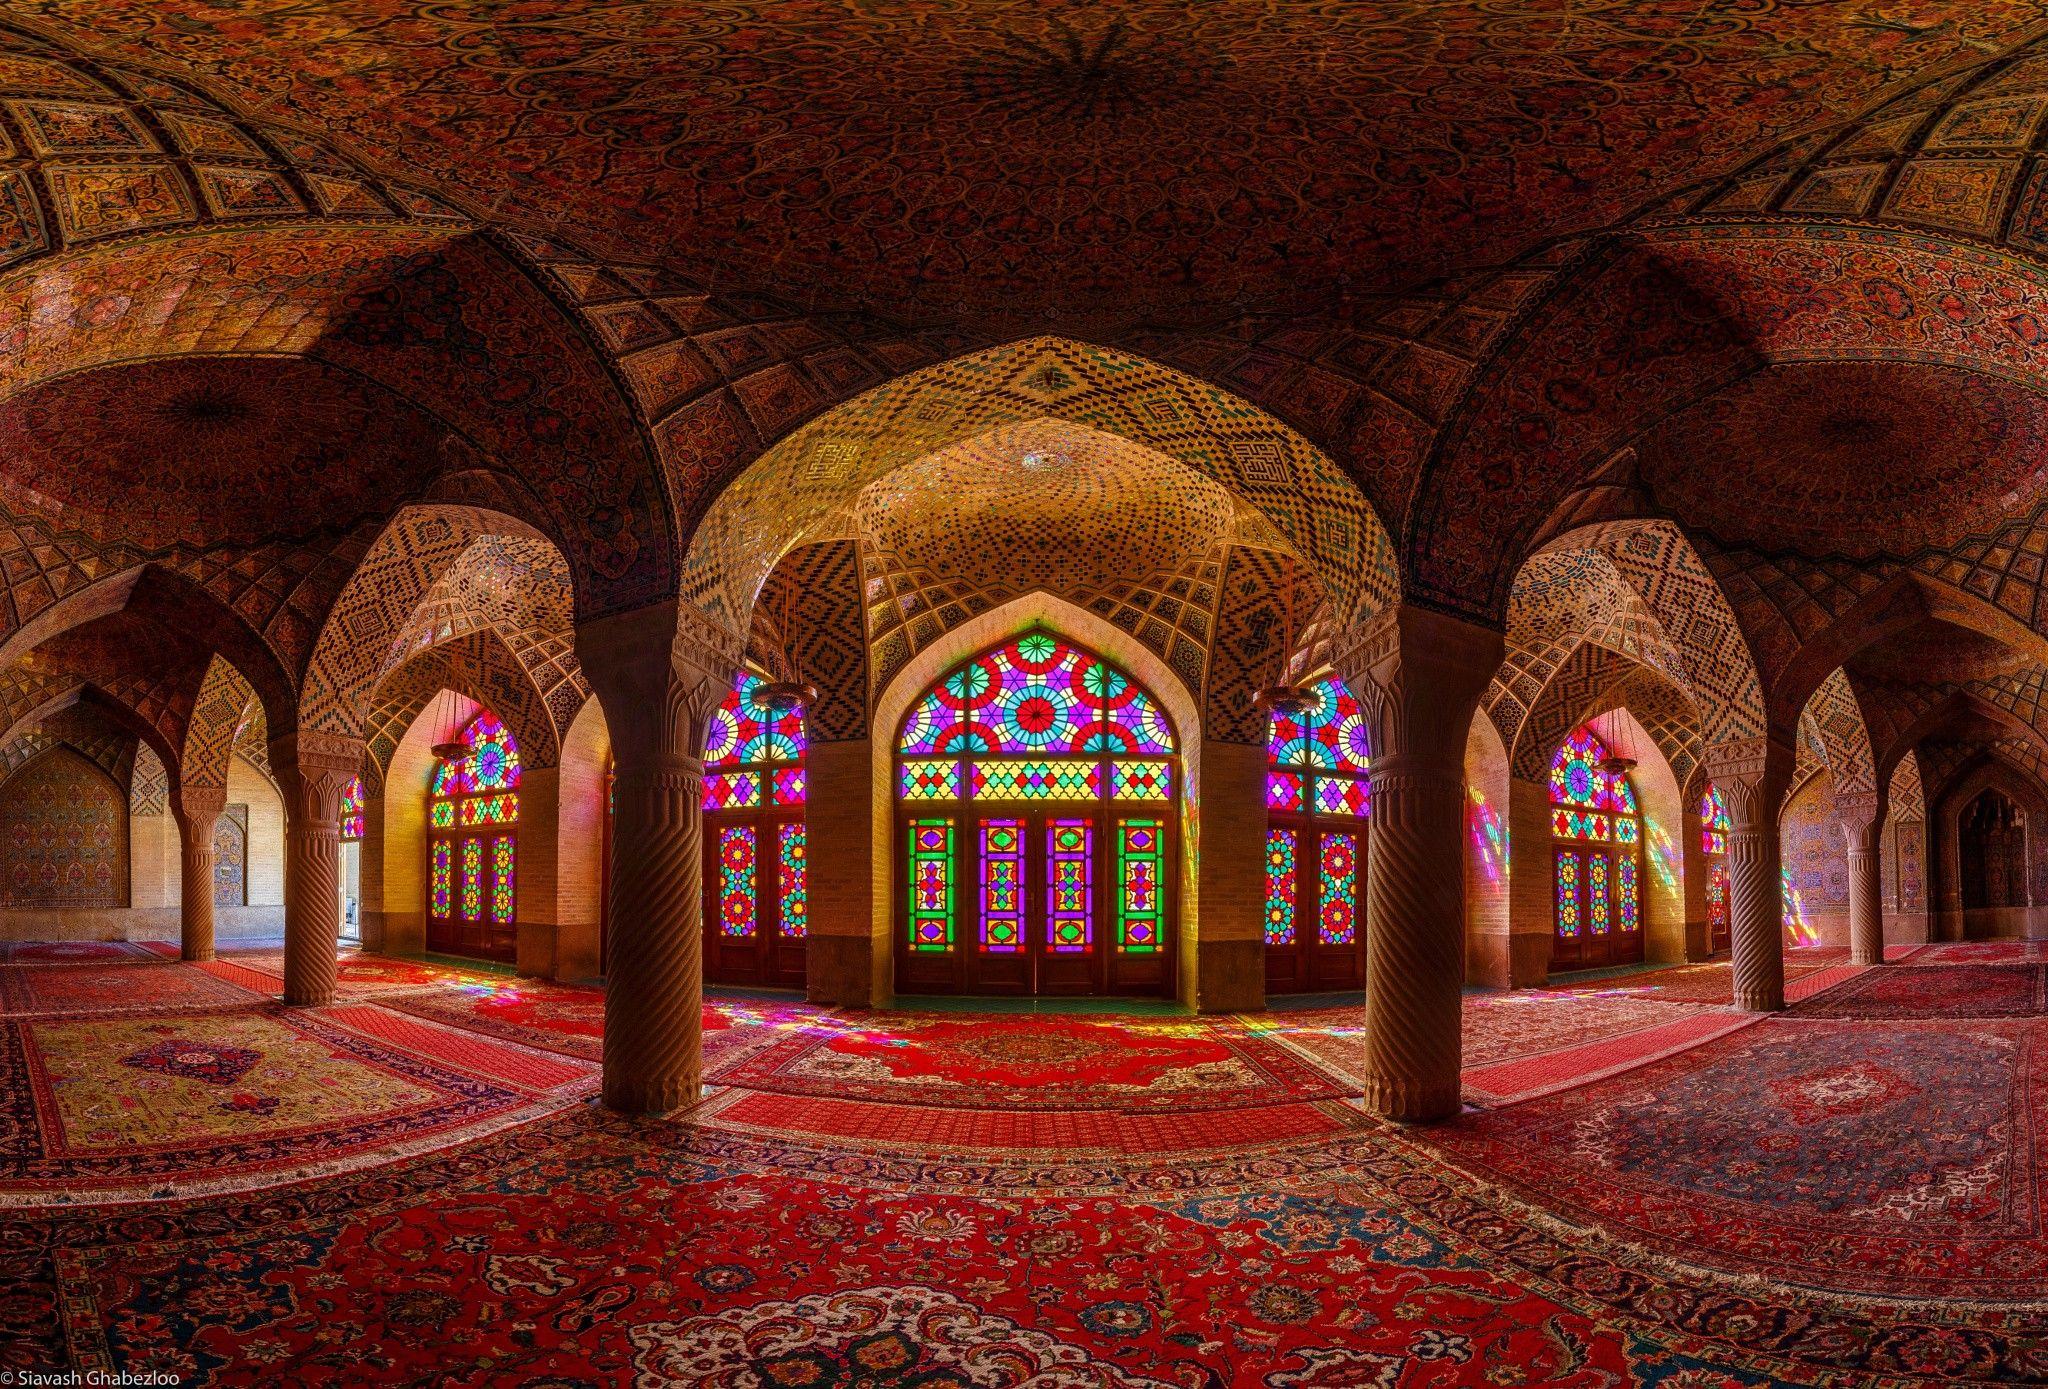 mosques, Islam, Iran, Islamic architecture, architecture